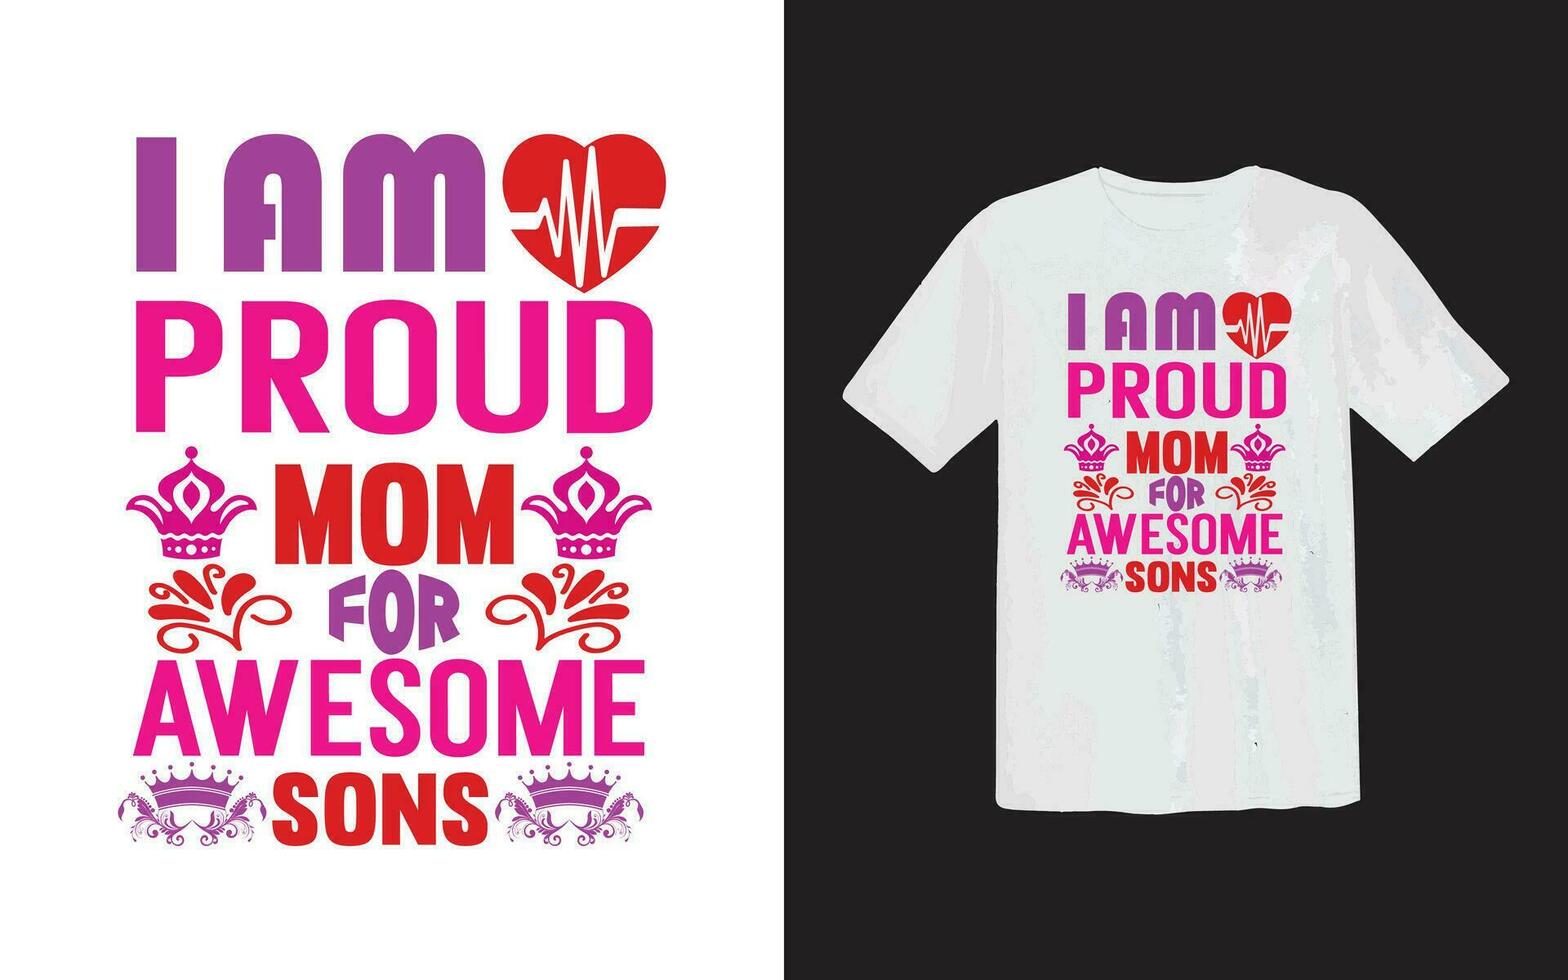 je un m fier maman typographie T-shirt vecteur